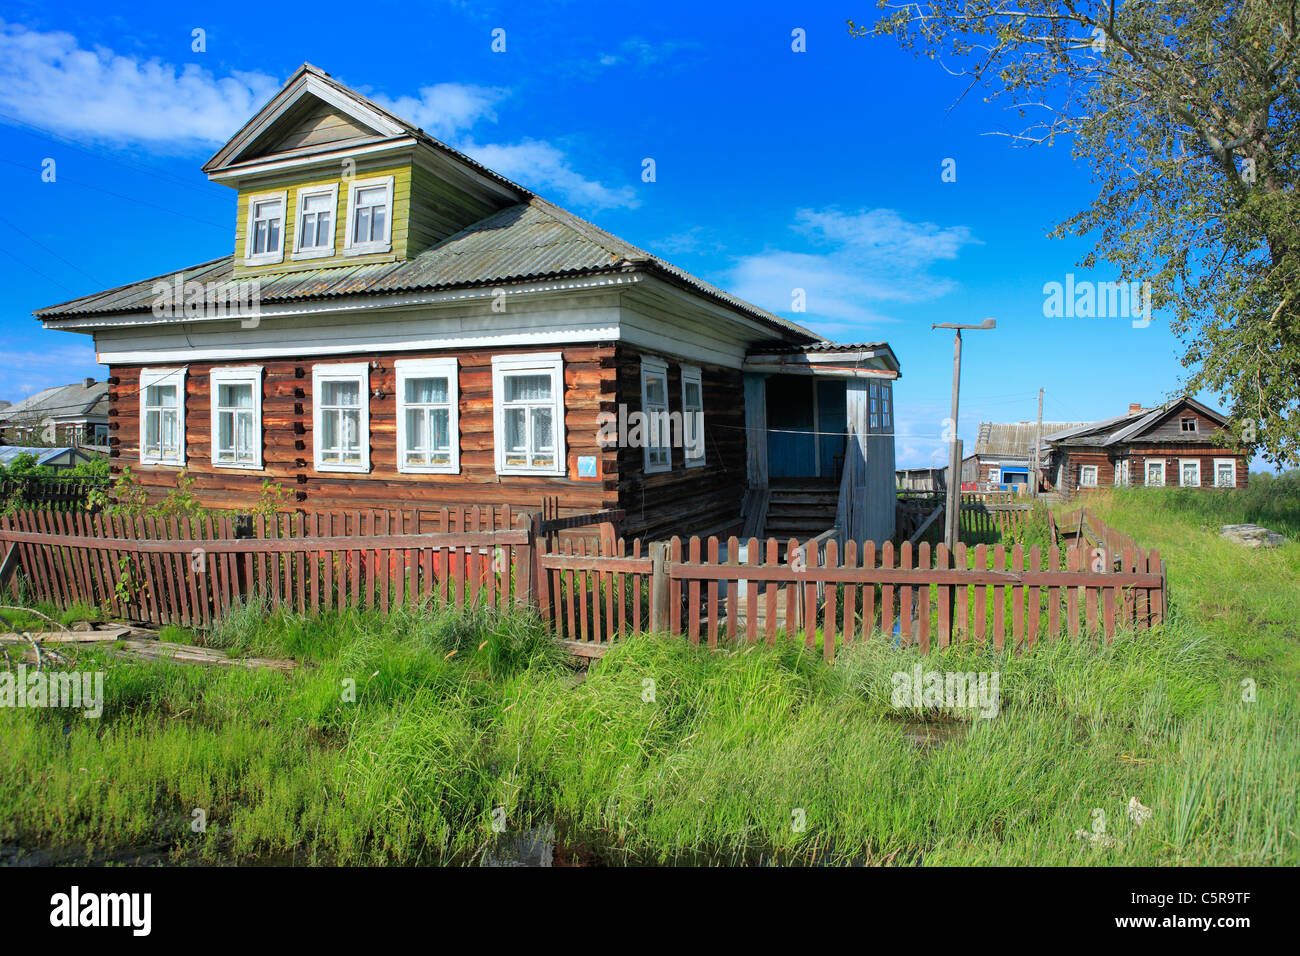 Insel in Dvina Fluss Delta, Konetsdvorie, Archangelsk (Archangelsk) Region, Russland Stockfoto